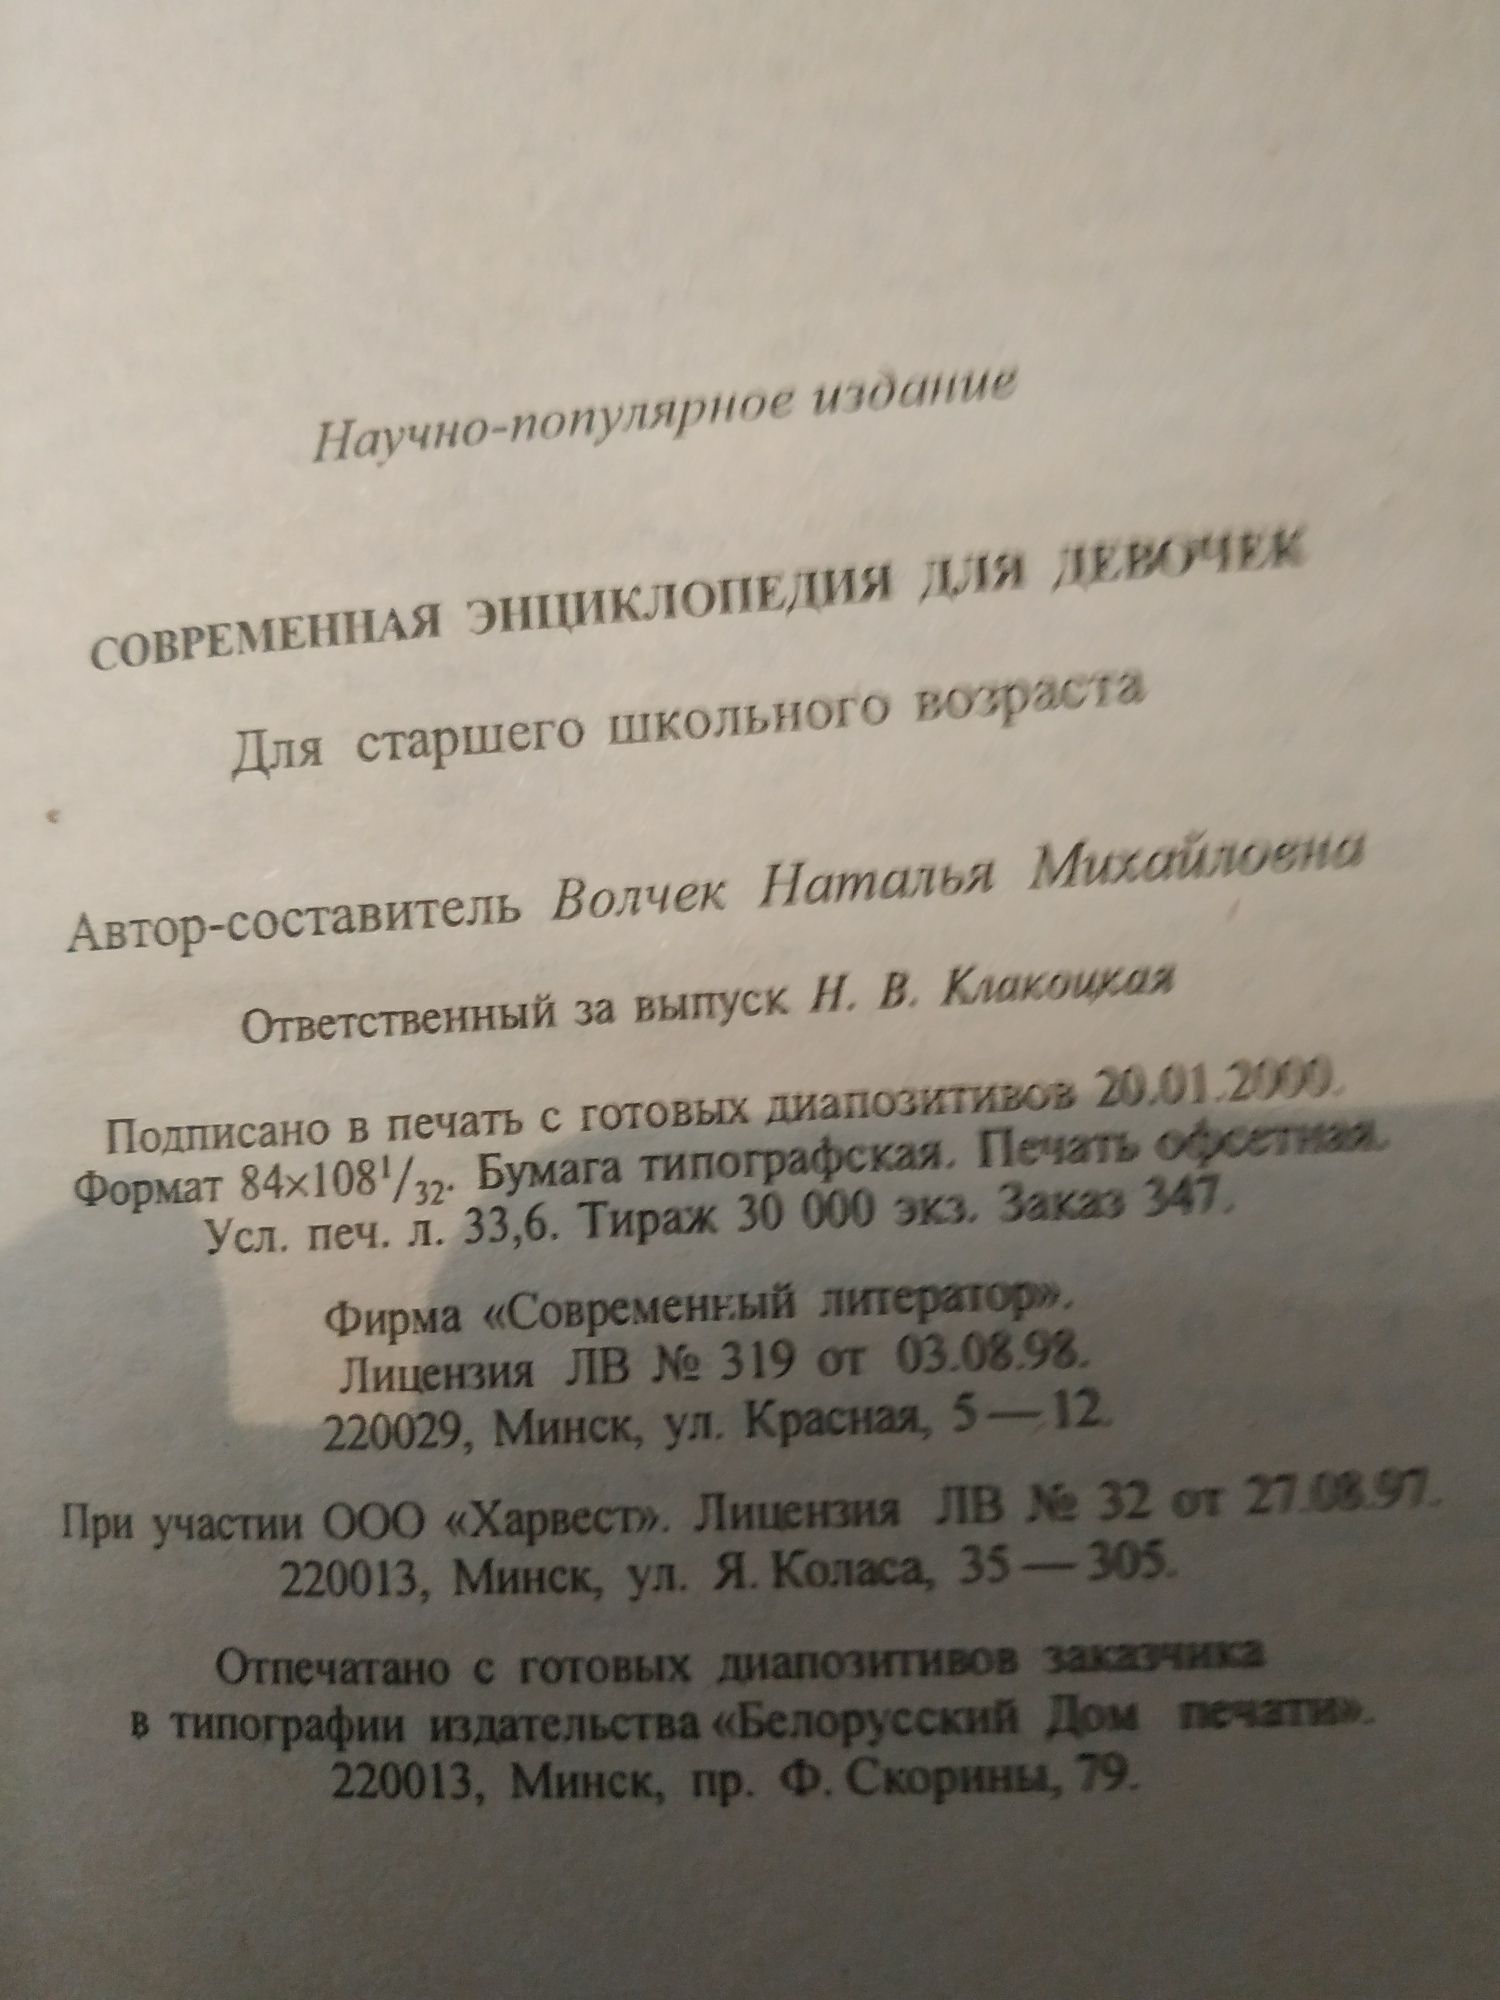 Современная энциклопедия для девочек.Л.Н.Волчек,2000 г